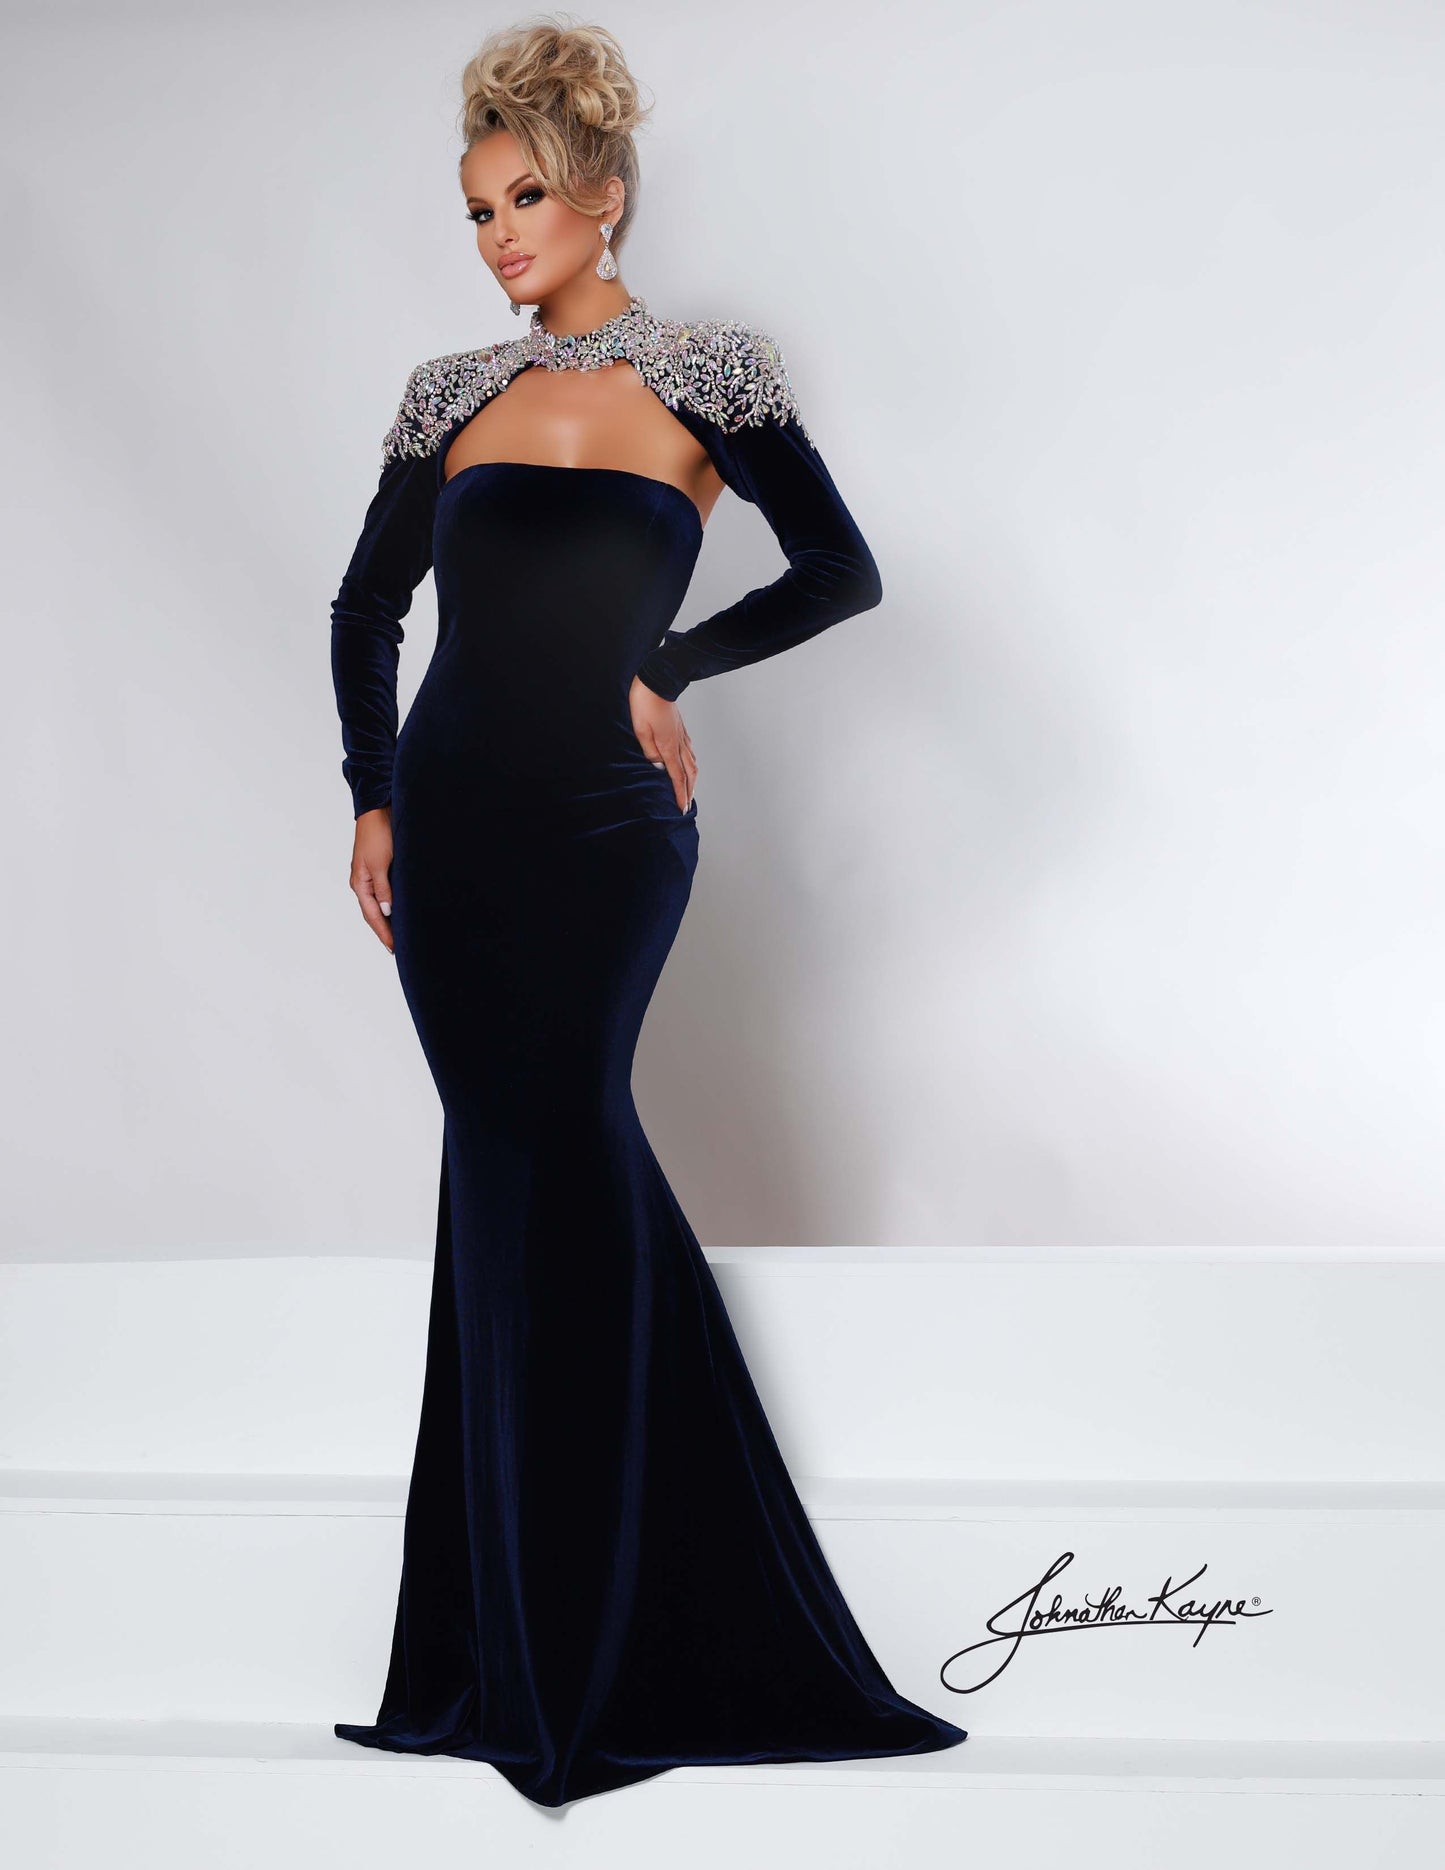 Johnathan Kayne Dress 2453 Velvet Pageant Dress Crystal Bolero Jacket Embellished Cape